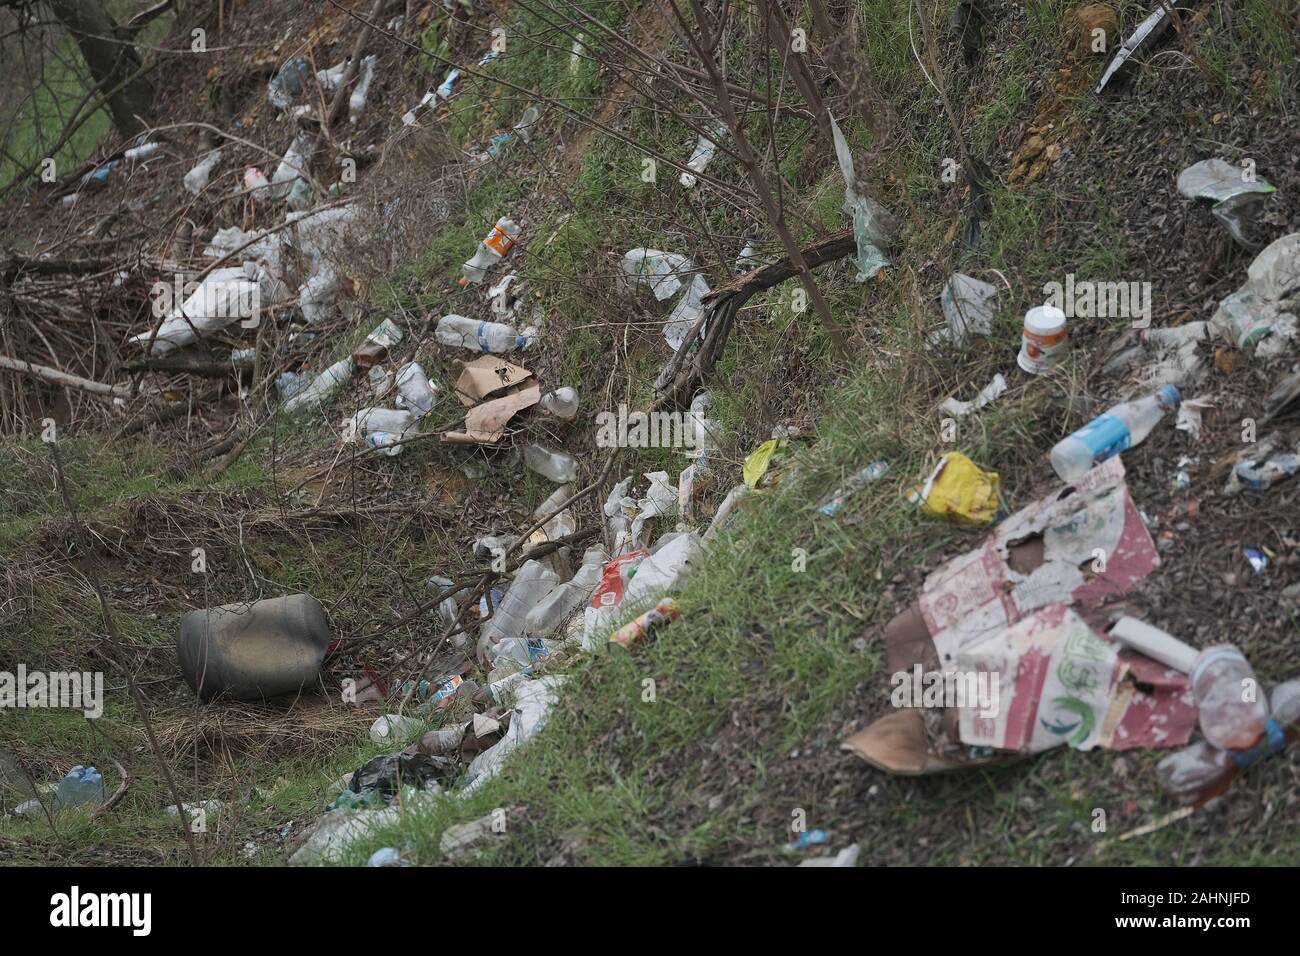 Elemental dump plastik Müll am Straßenrand in der Nähe am Rande des Waldes. Verschmutzung der Umwelt mit Kunststoff- und andere Abfälle. Stockfoto